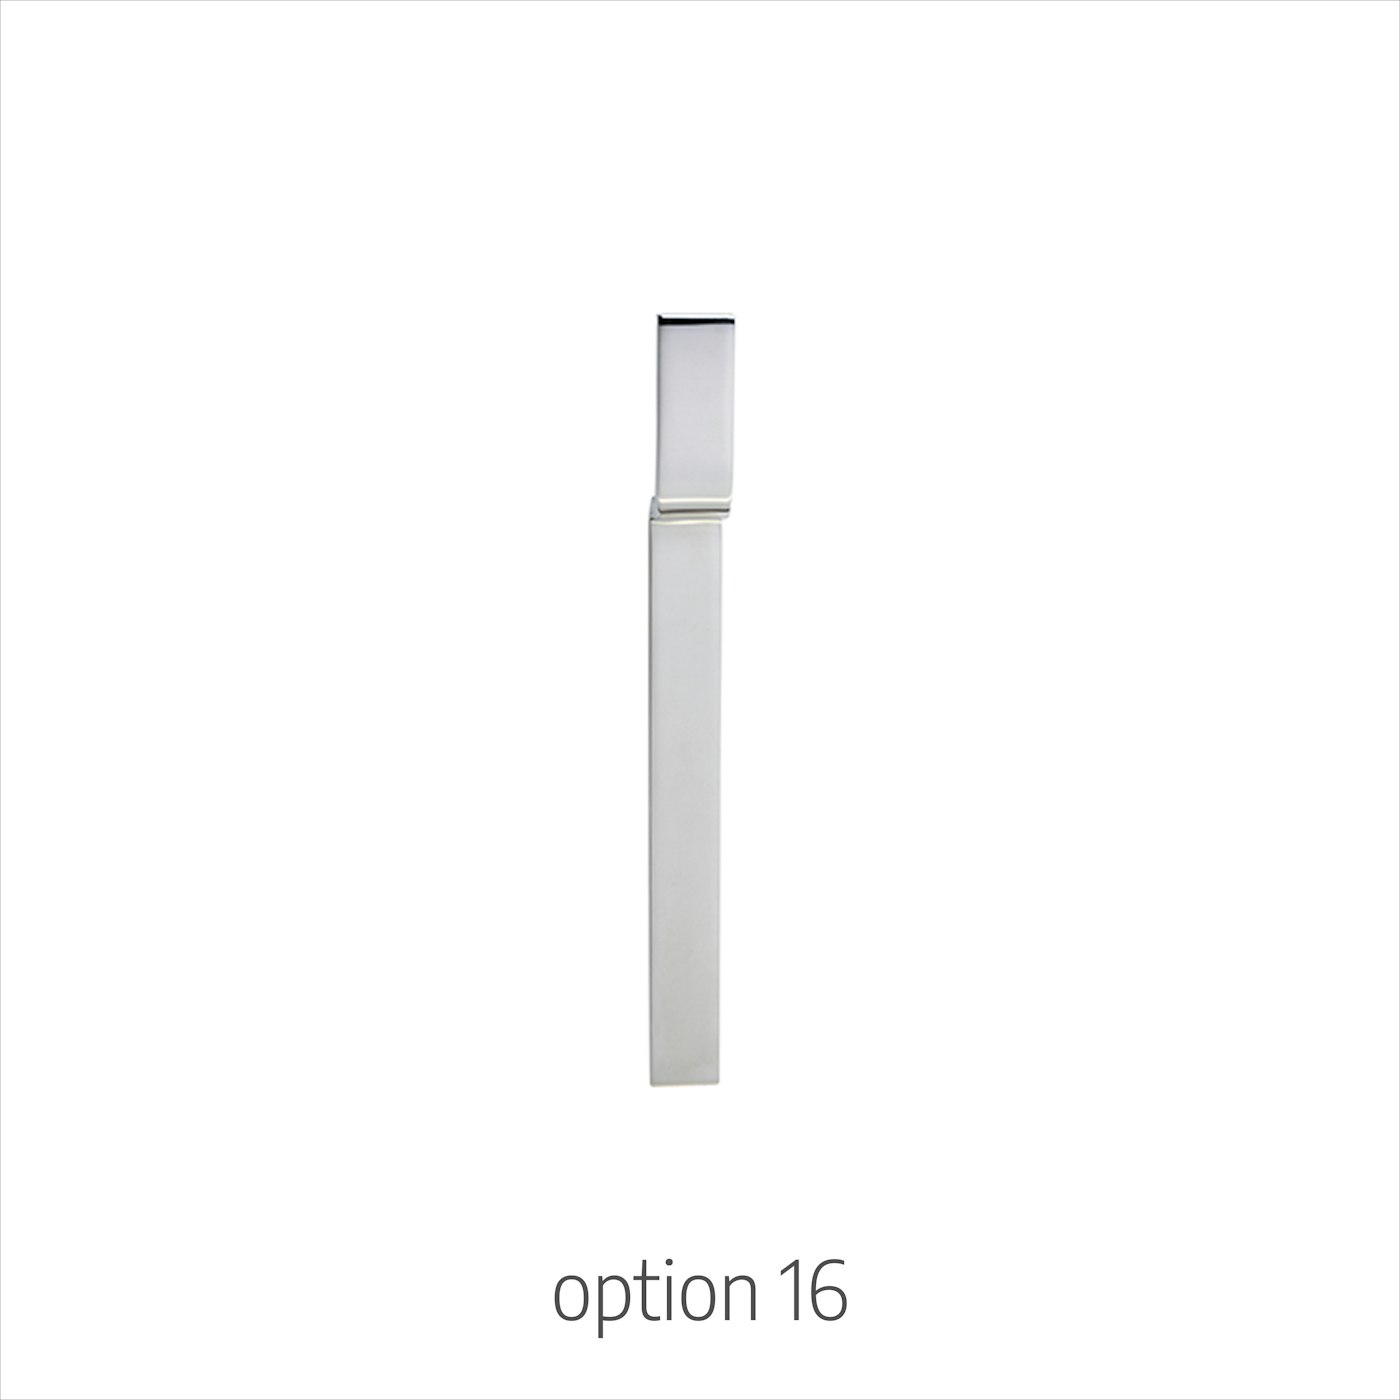 option 16